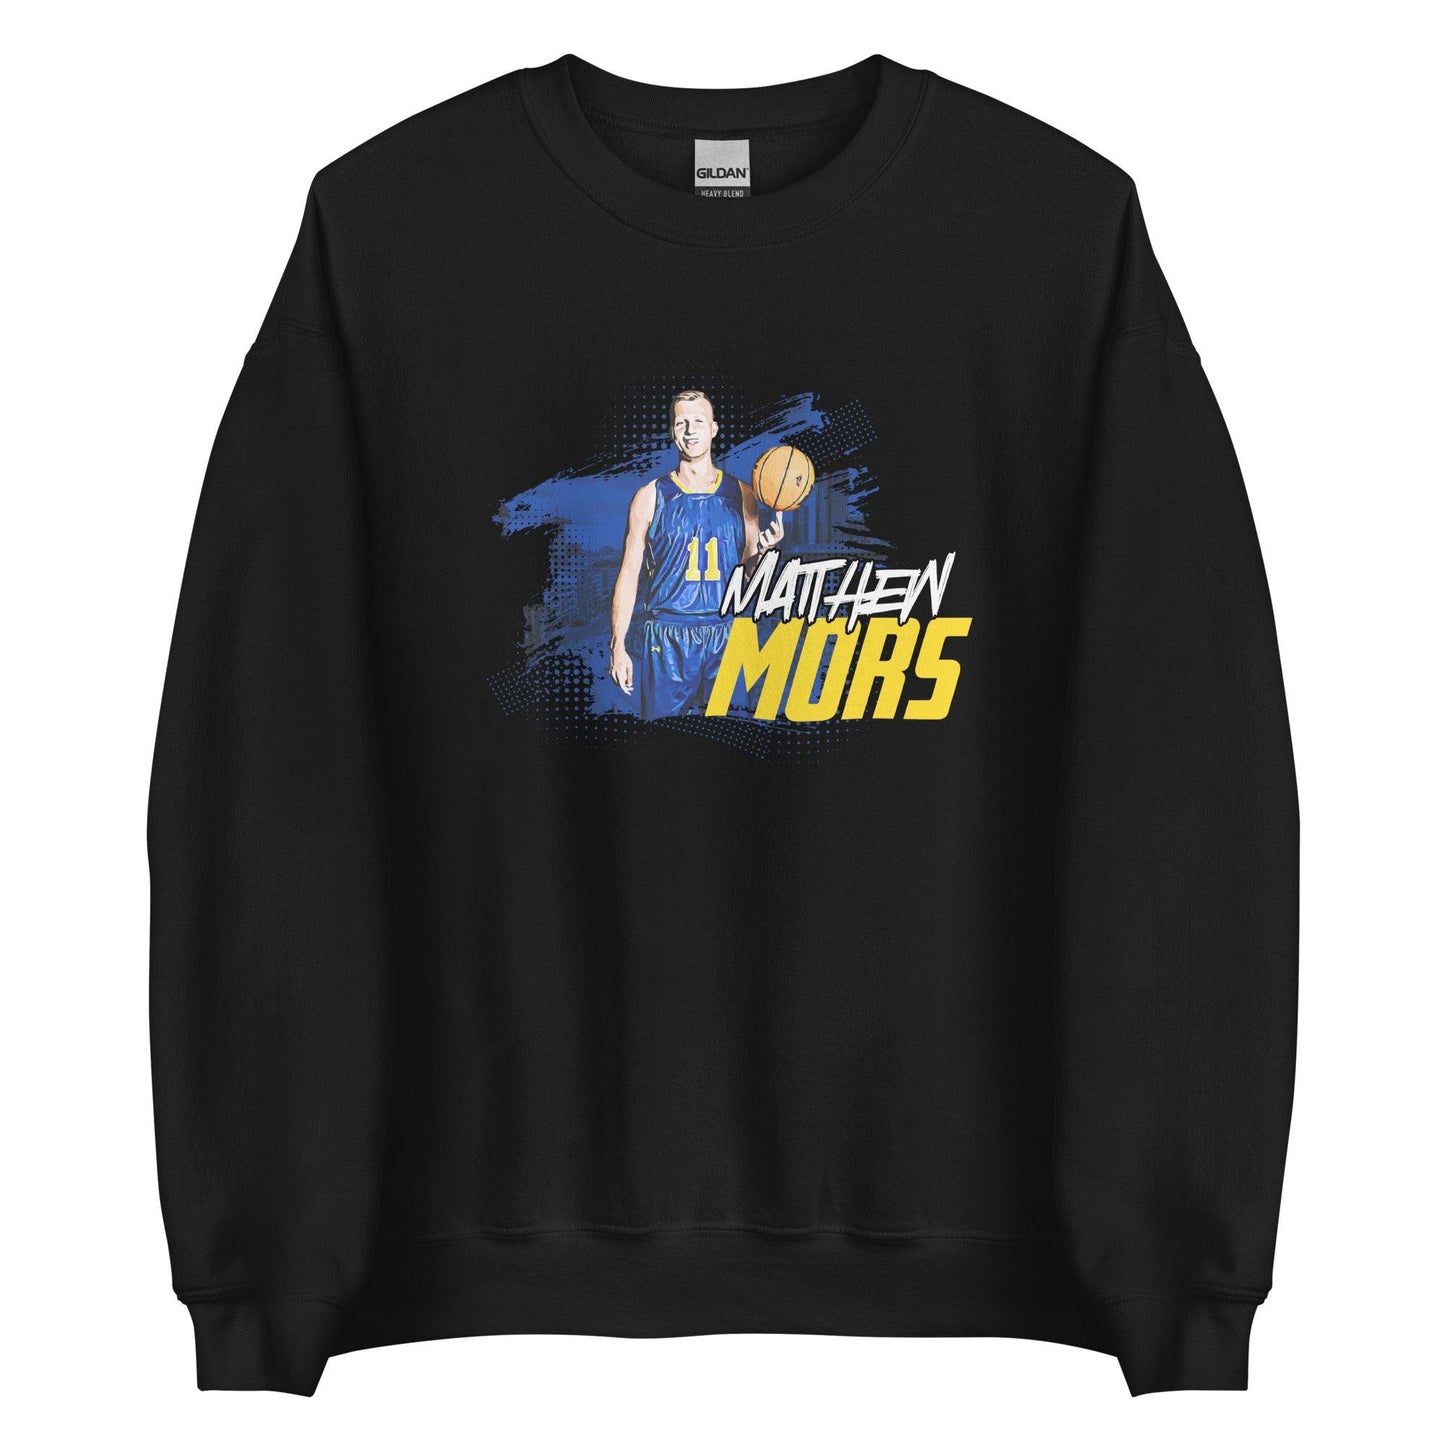 Matthew Mors "Gameday" Sweatshirt - Fan Arch